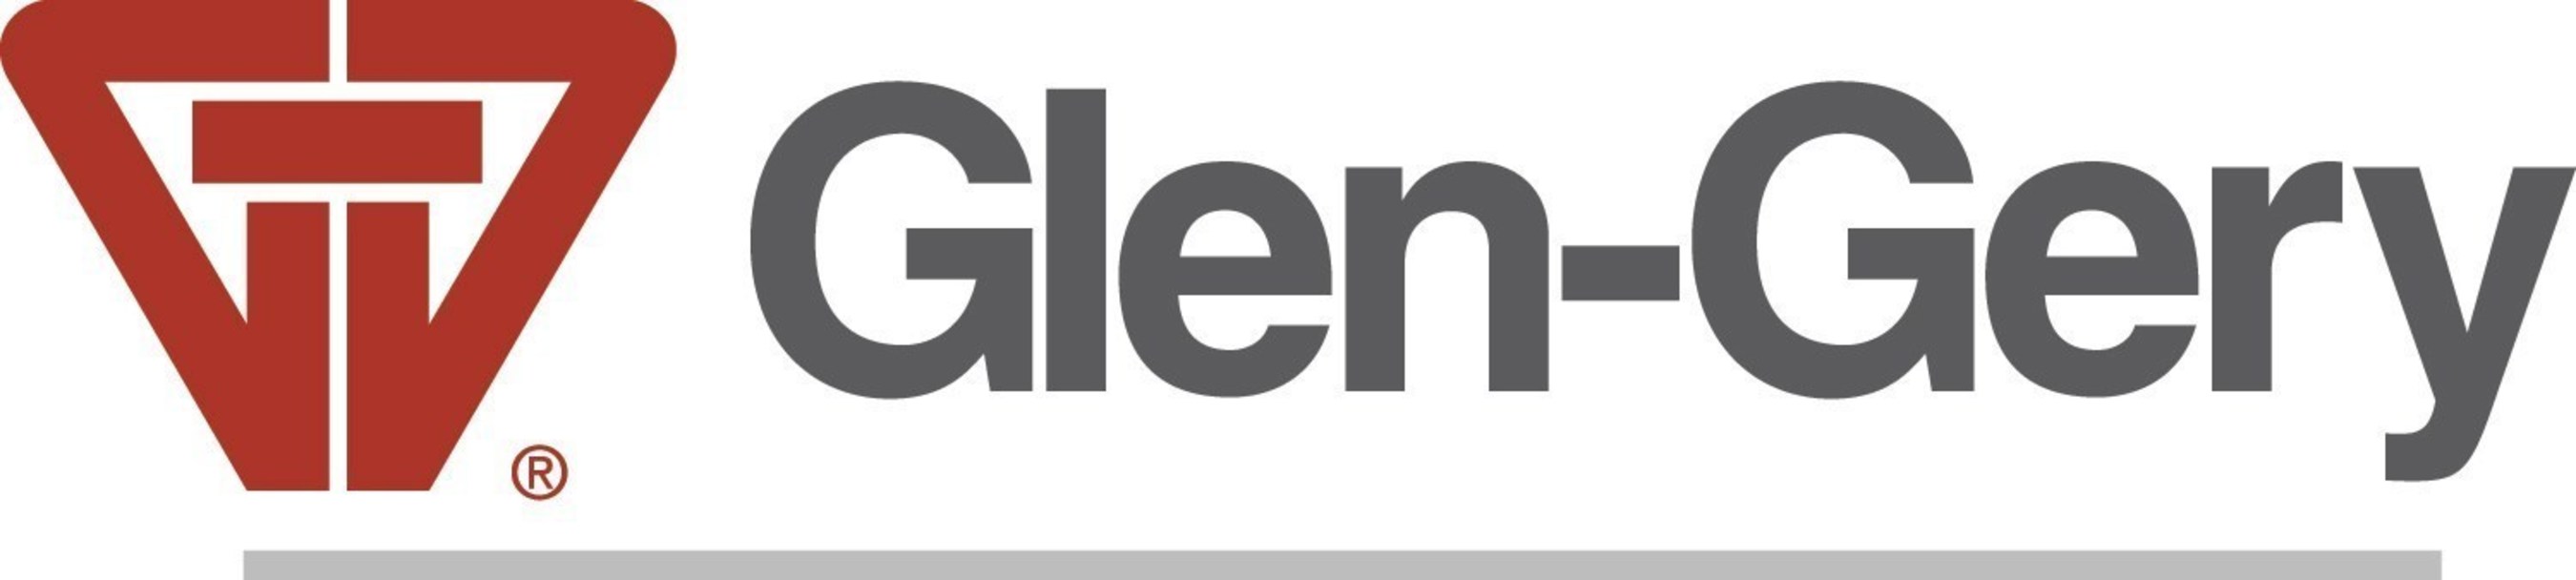 Glen-Gery logo (PRNewsFoto/Glen-Gery)